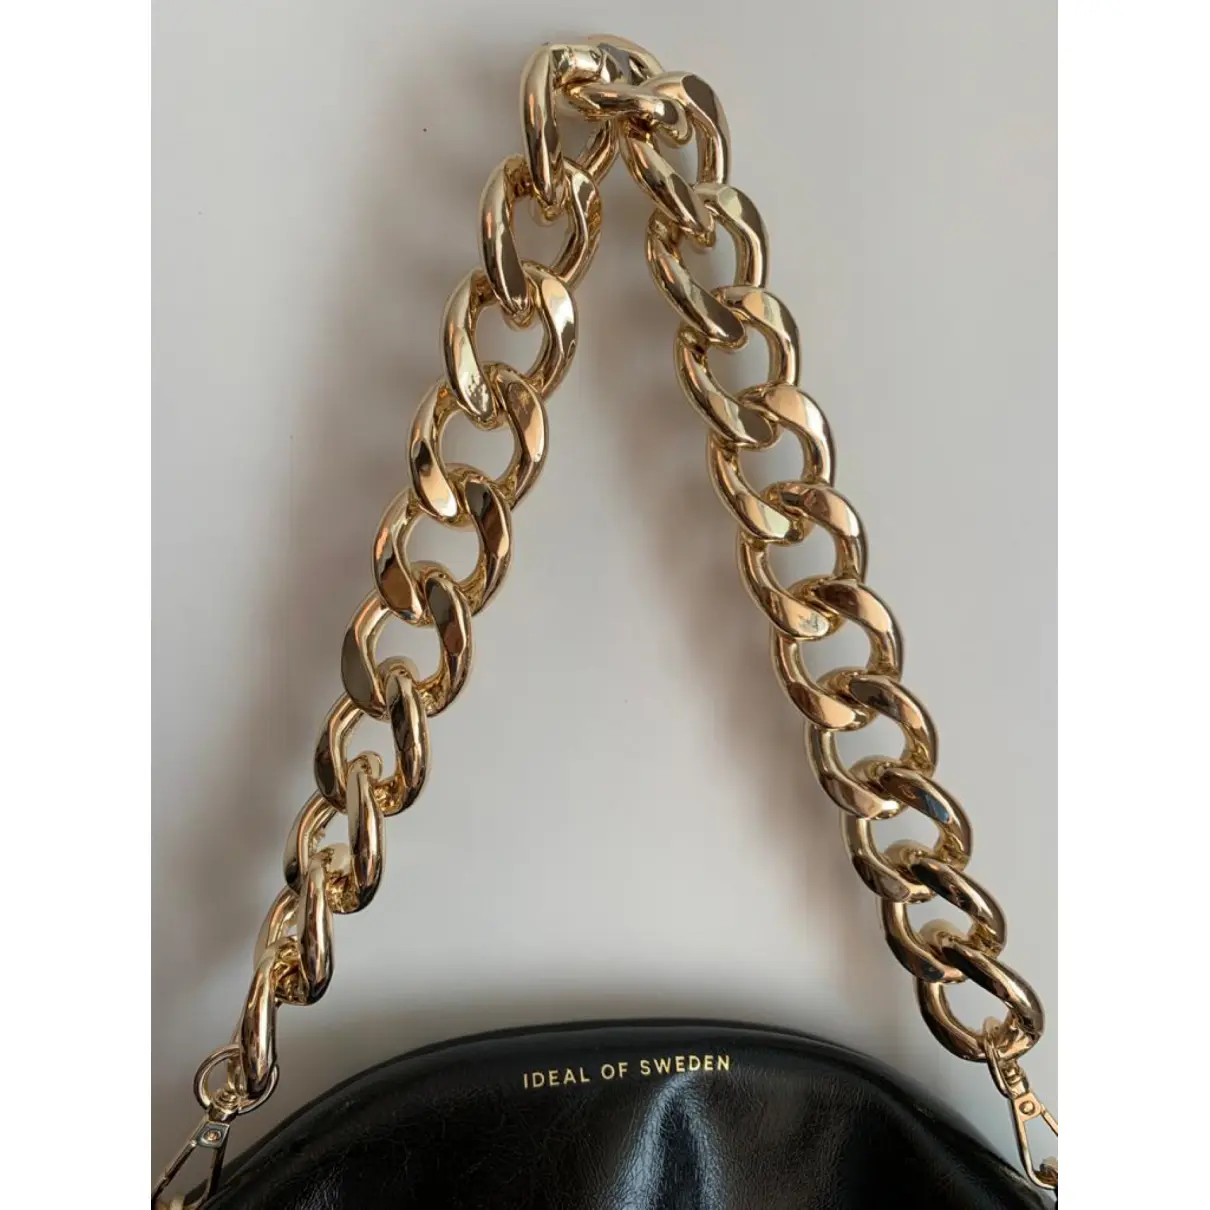 Buy IDEAL OF SWEDEN Leather handbag online